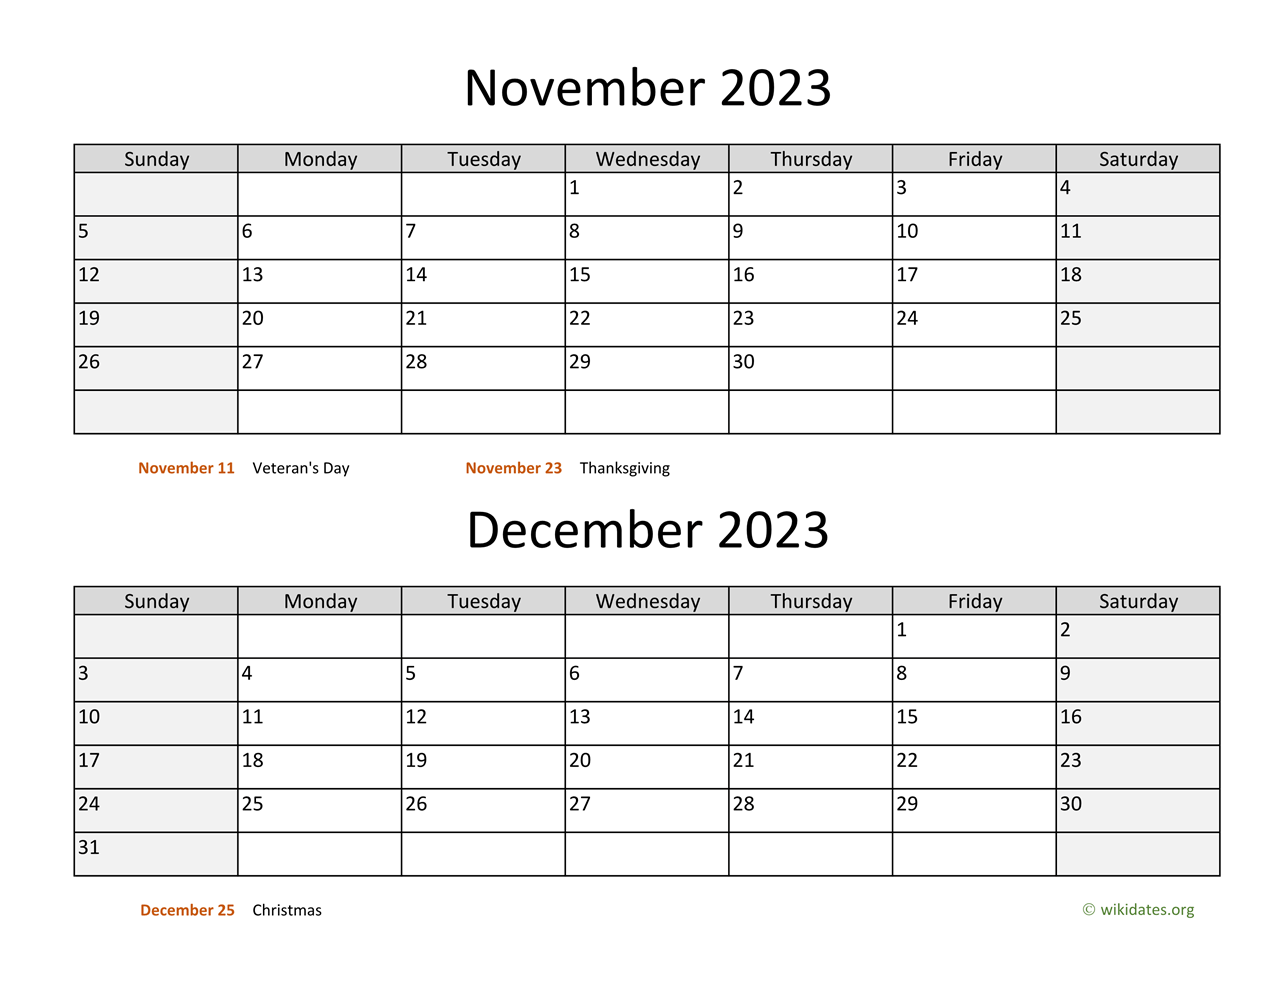 calendar-2023-november-december-get-calendar-2023-update